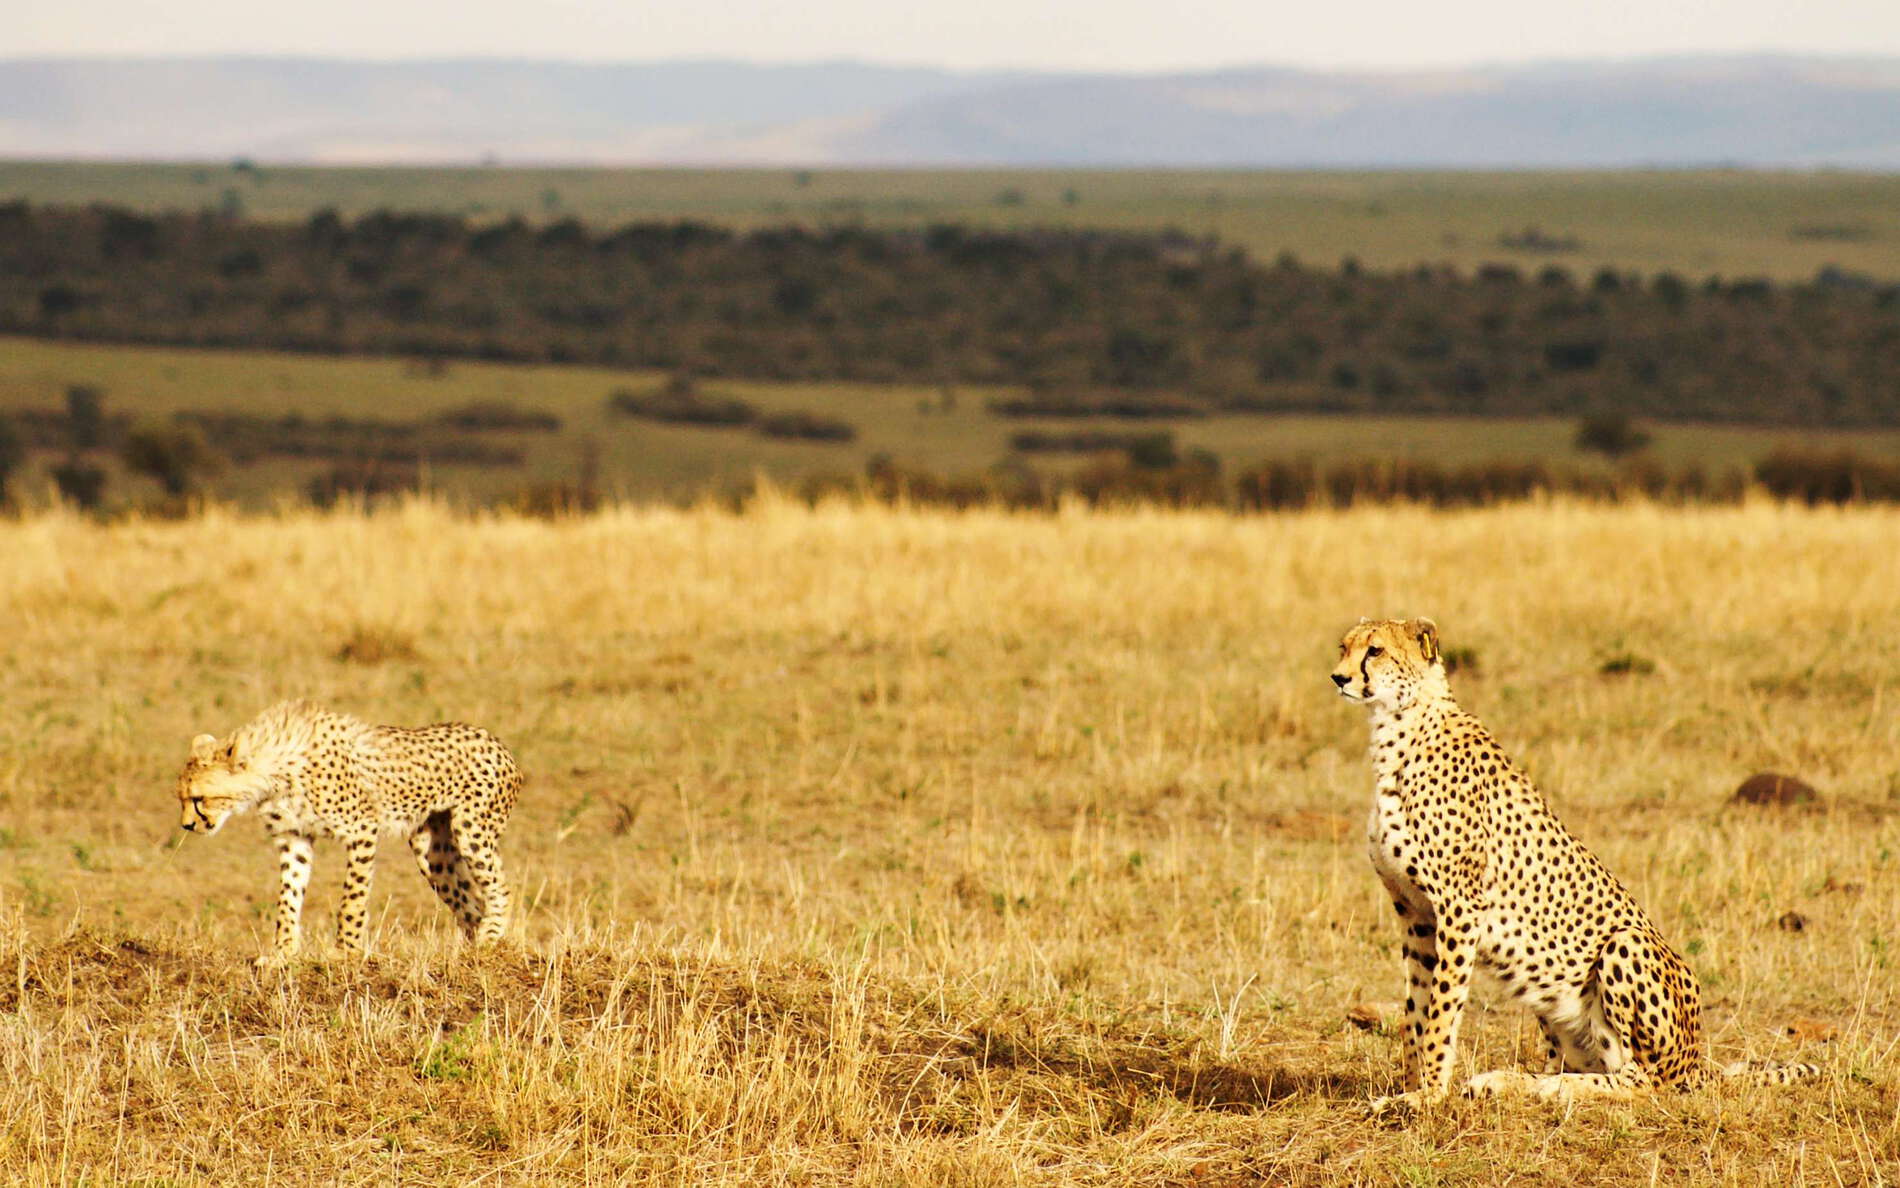 Masai Mara NR with Cheetah